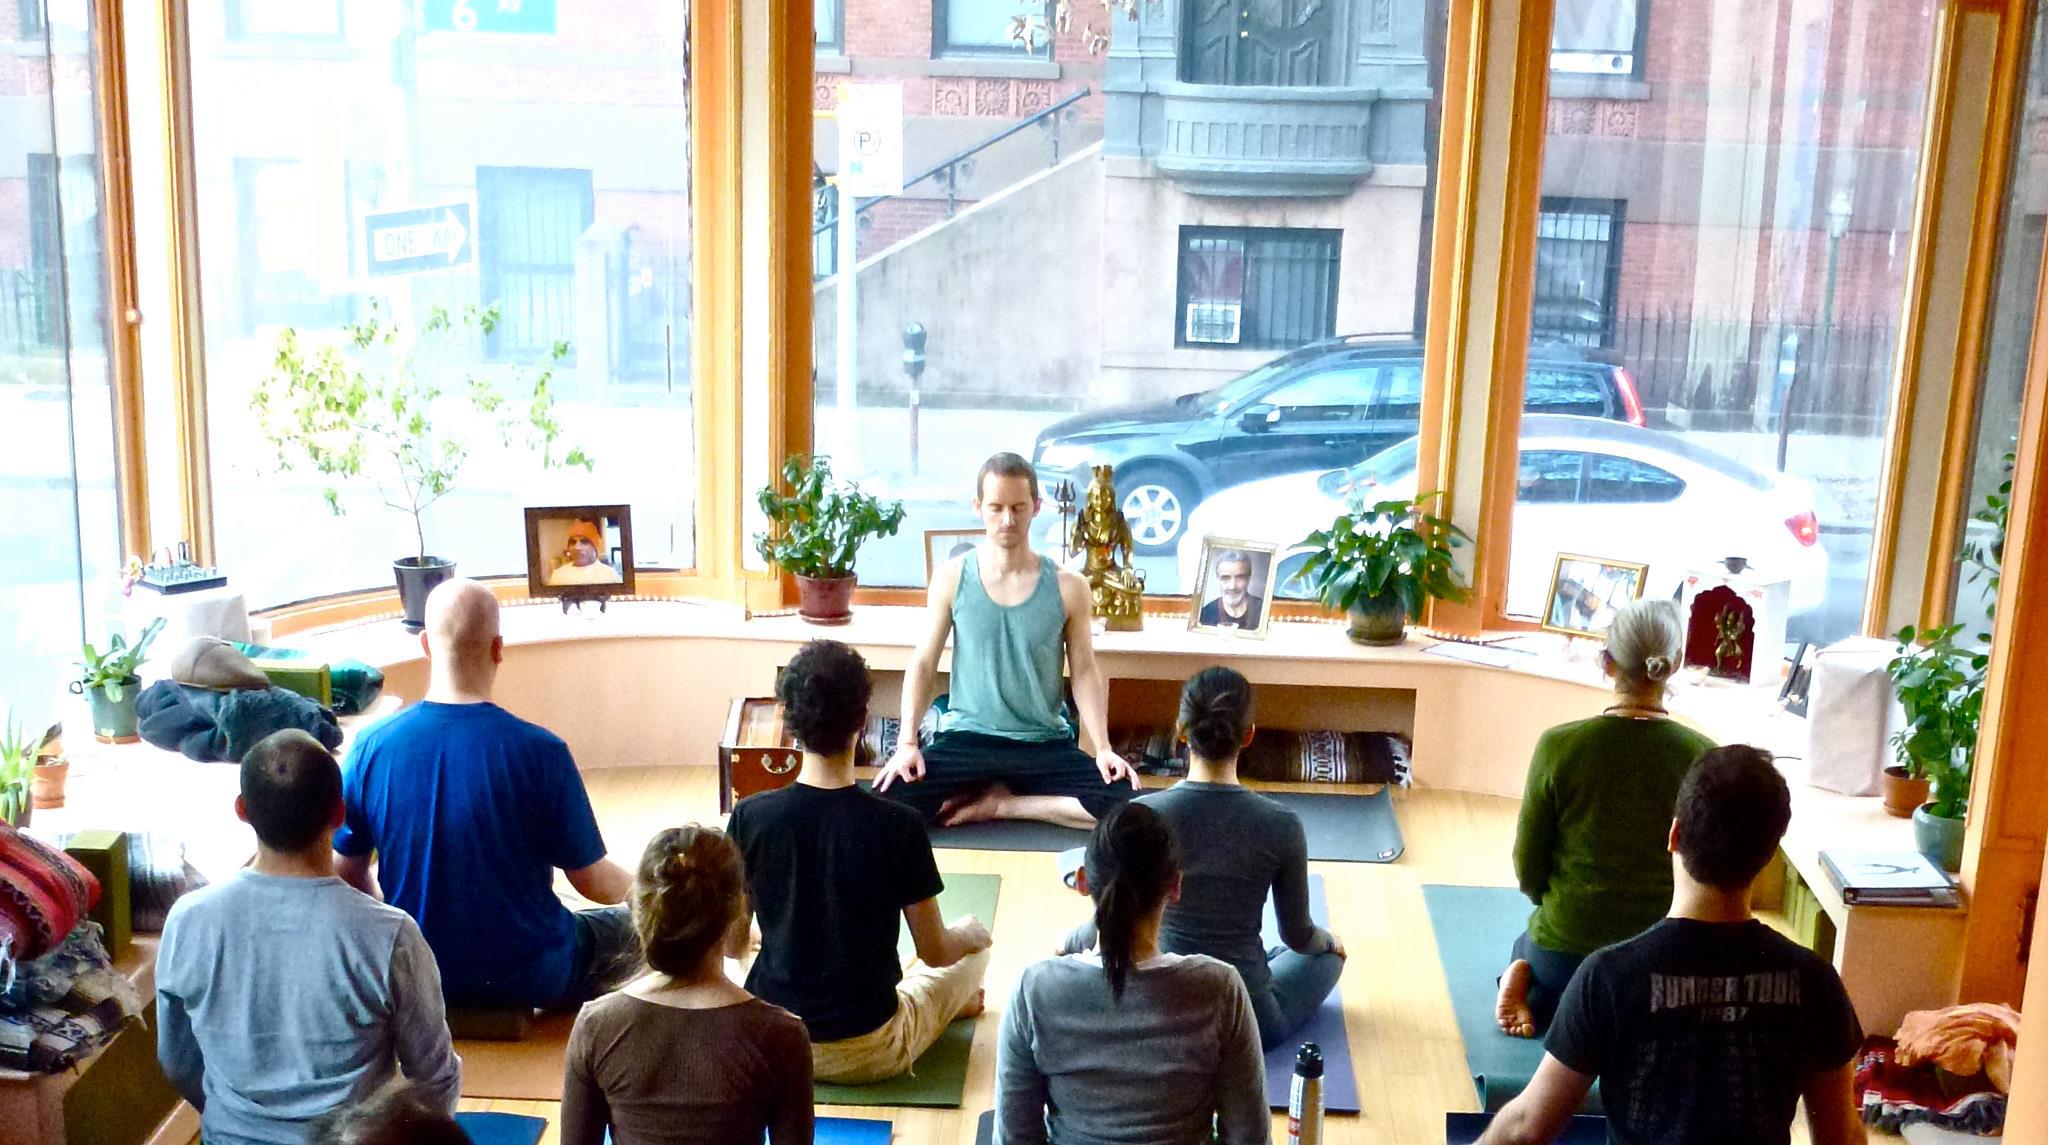 Brooklyn Yoga School United states 